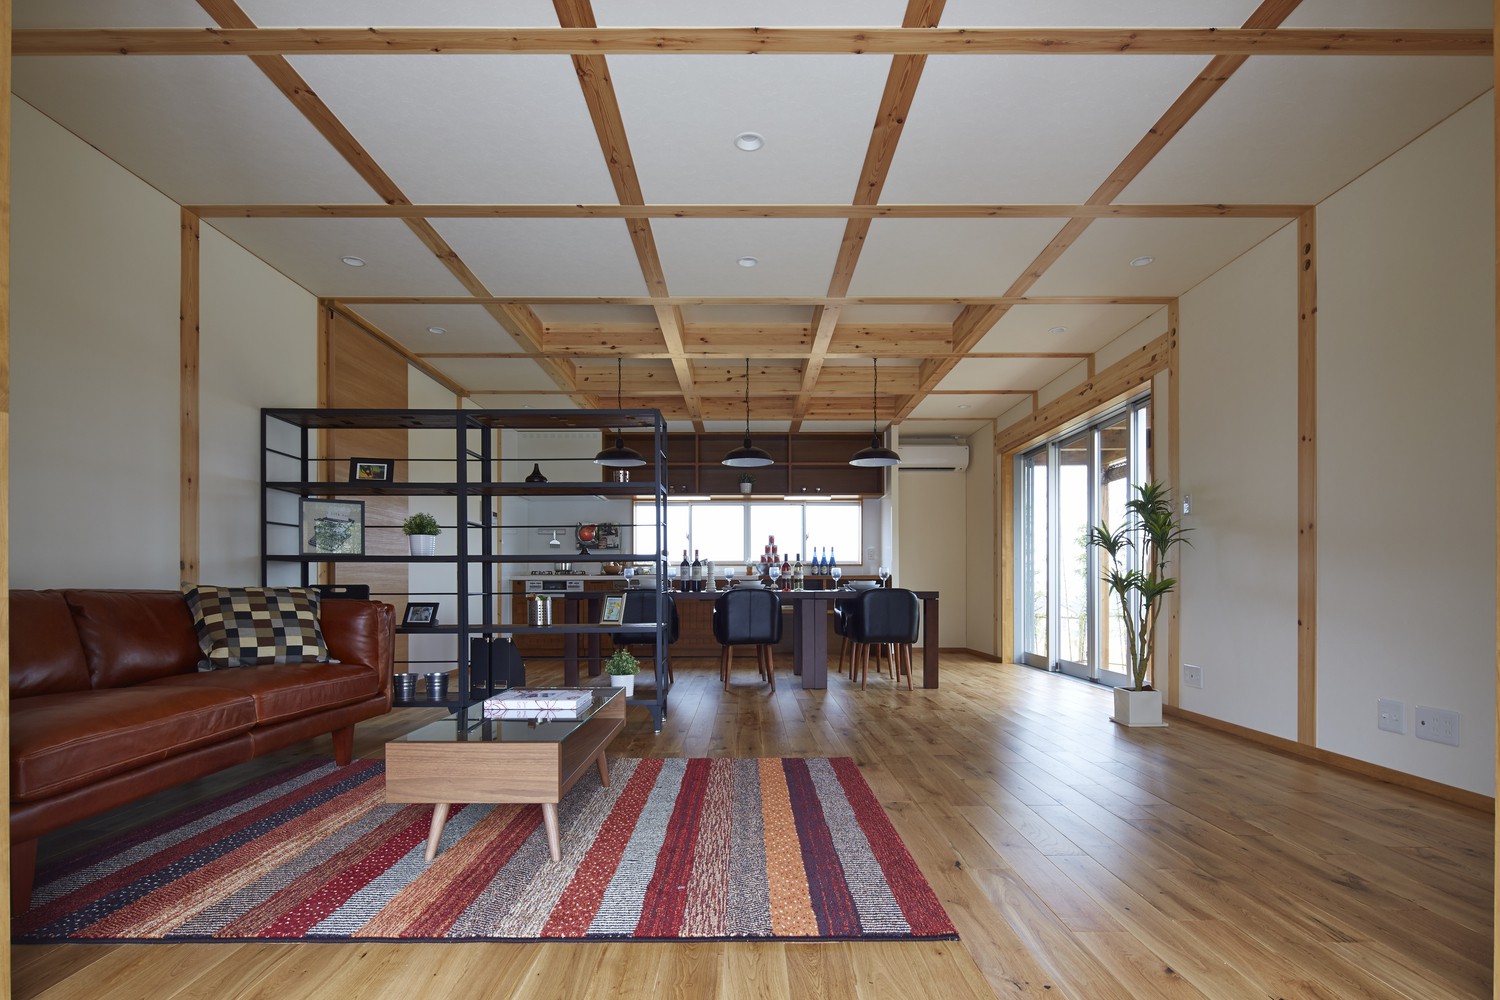 Hình ảnh bên trong nhà 2 tầng với kèo gỗ dạng lưới chịu lực, phòng khách và khu bếp ăn sử dụng nội thất đơn giản